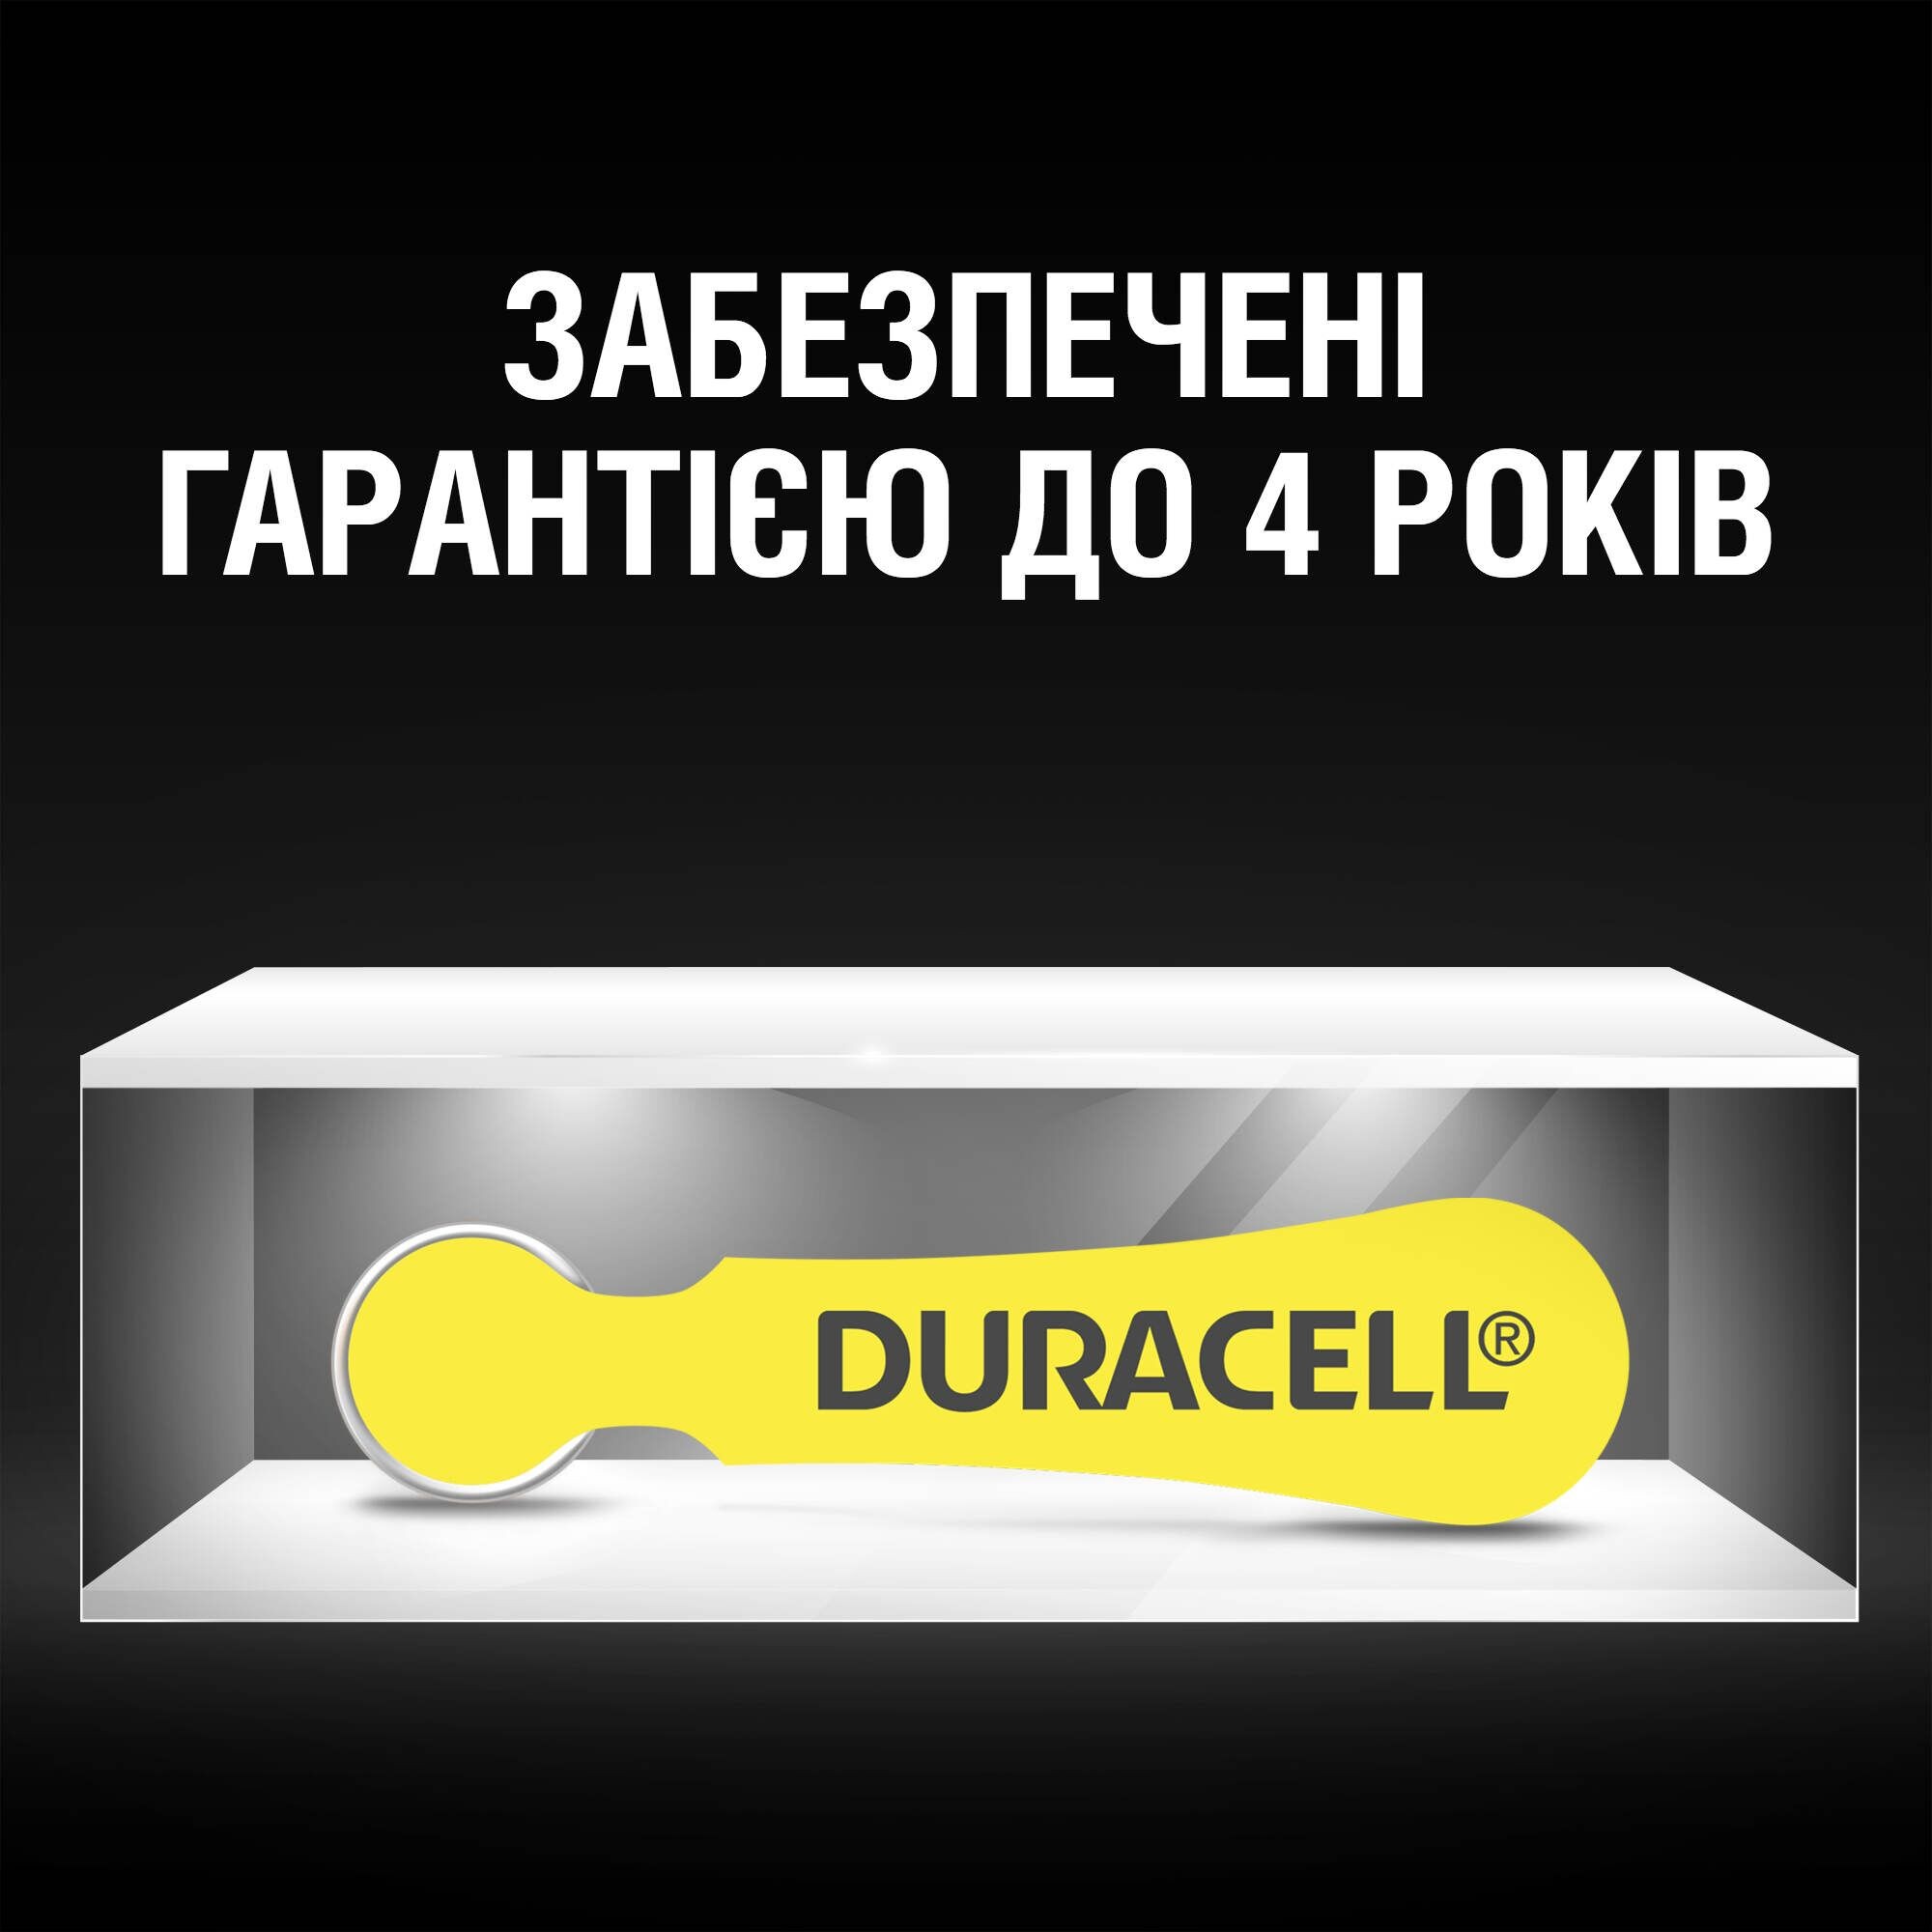 Батарейка Duracell HA 10 (96091449) обзор - фото 8